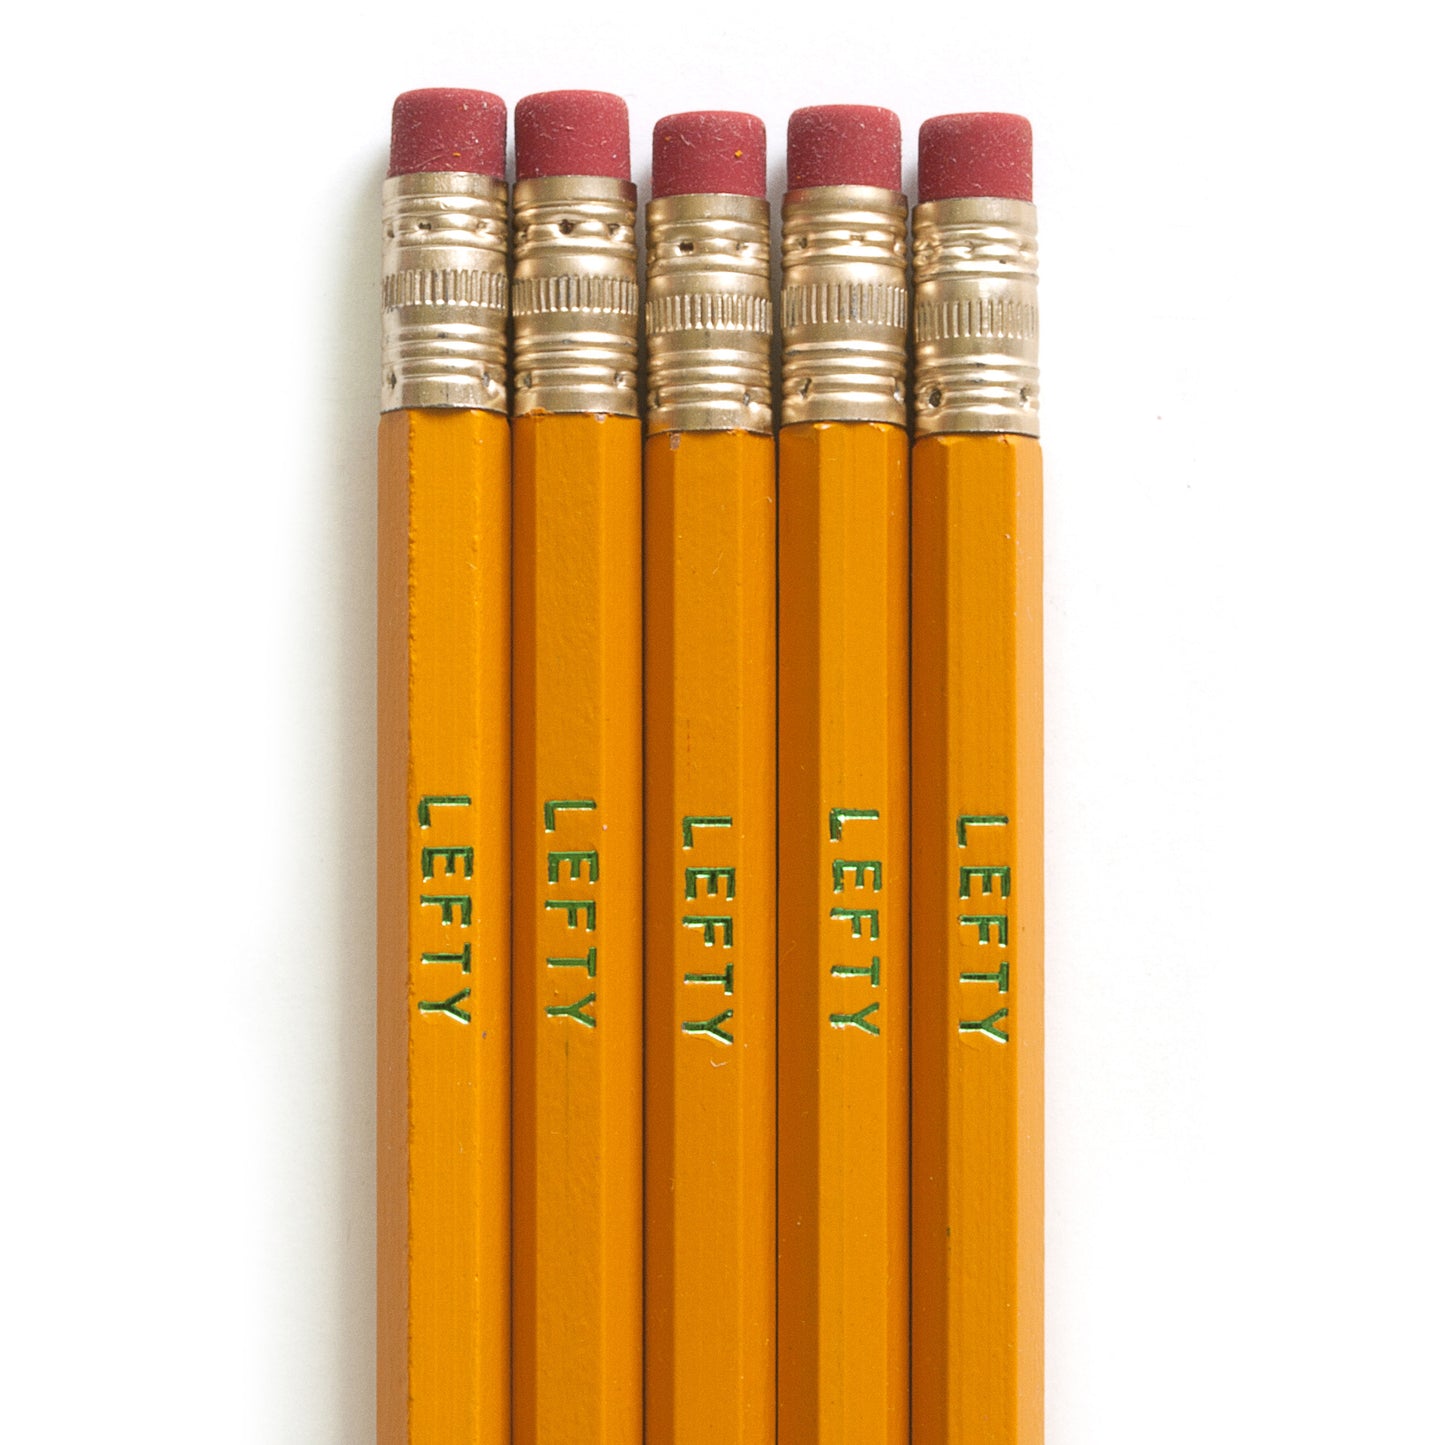 Left-Handed Pencils